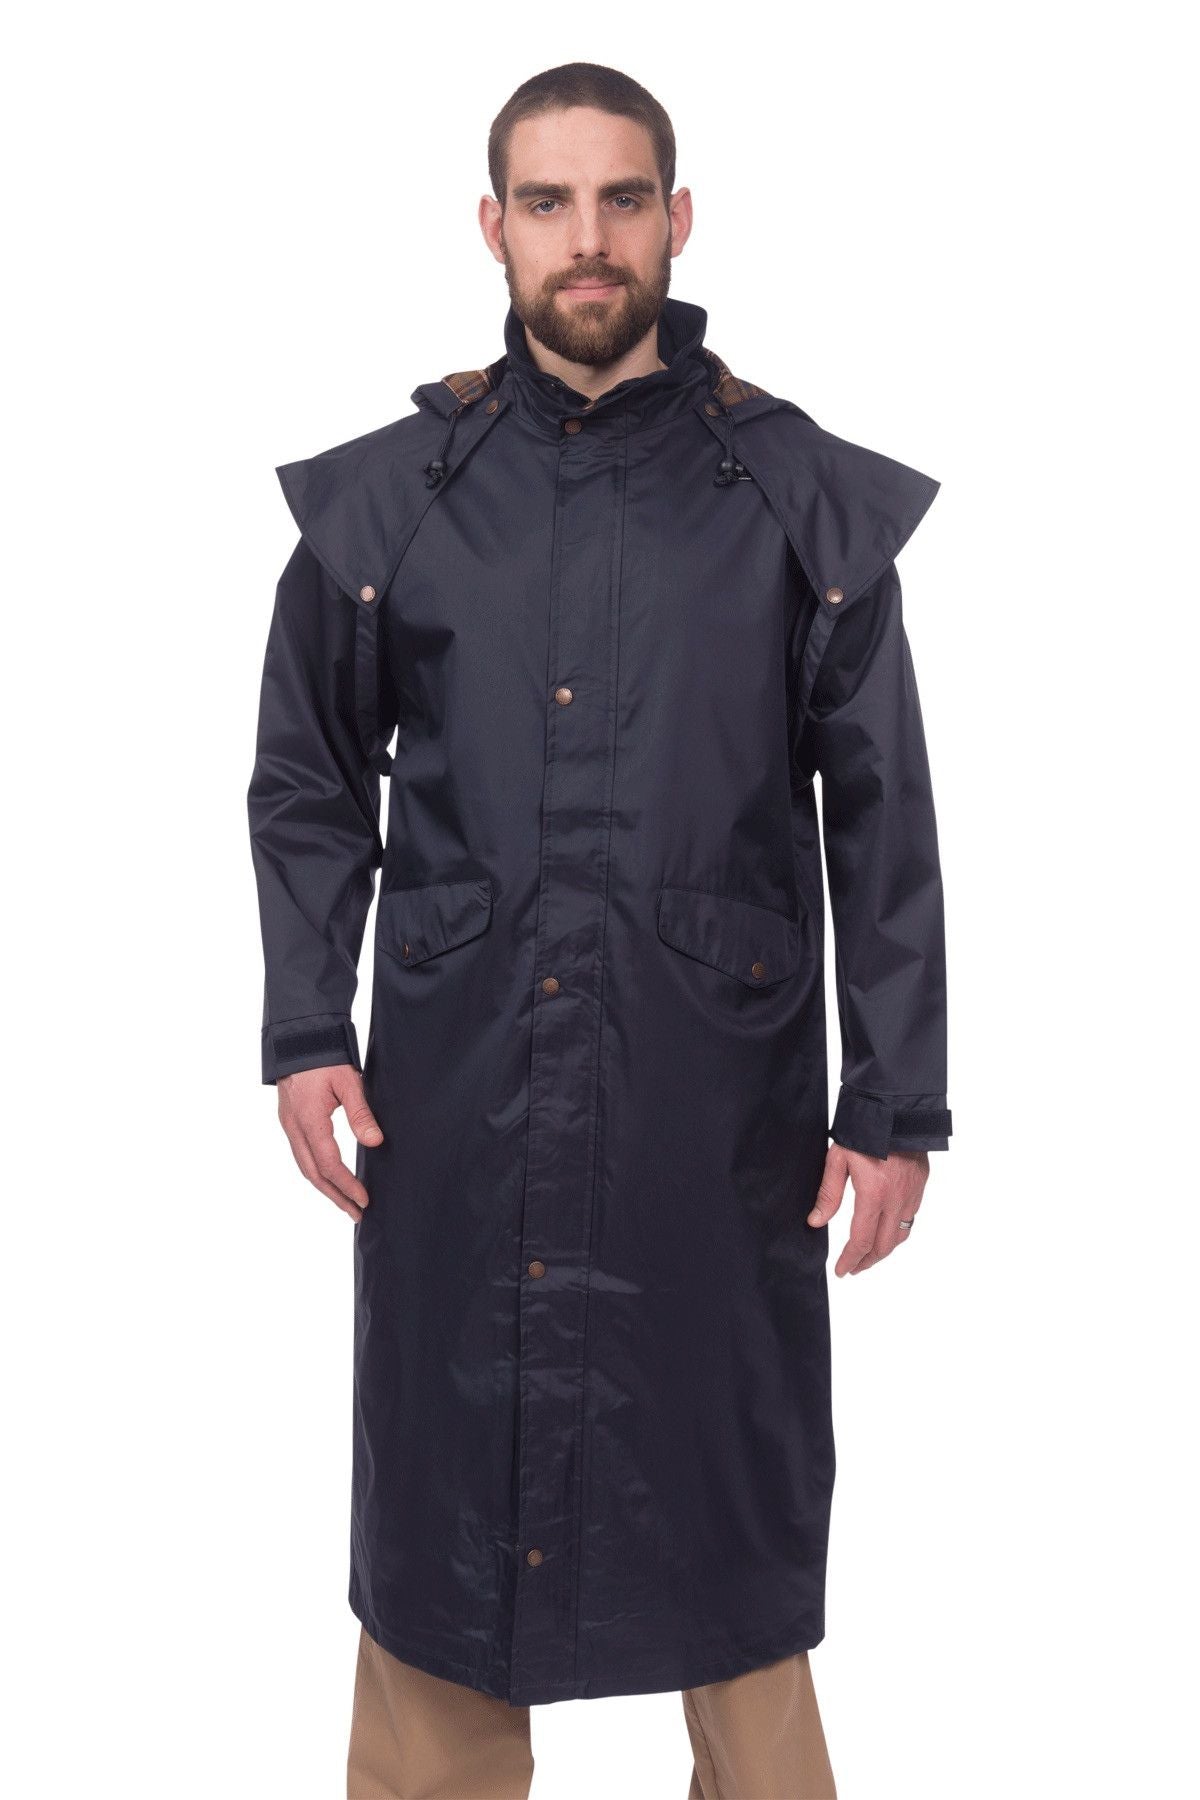 Target Dry Stockman Full Length Waterproof Coat for Men